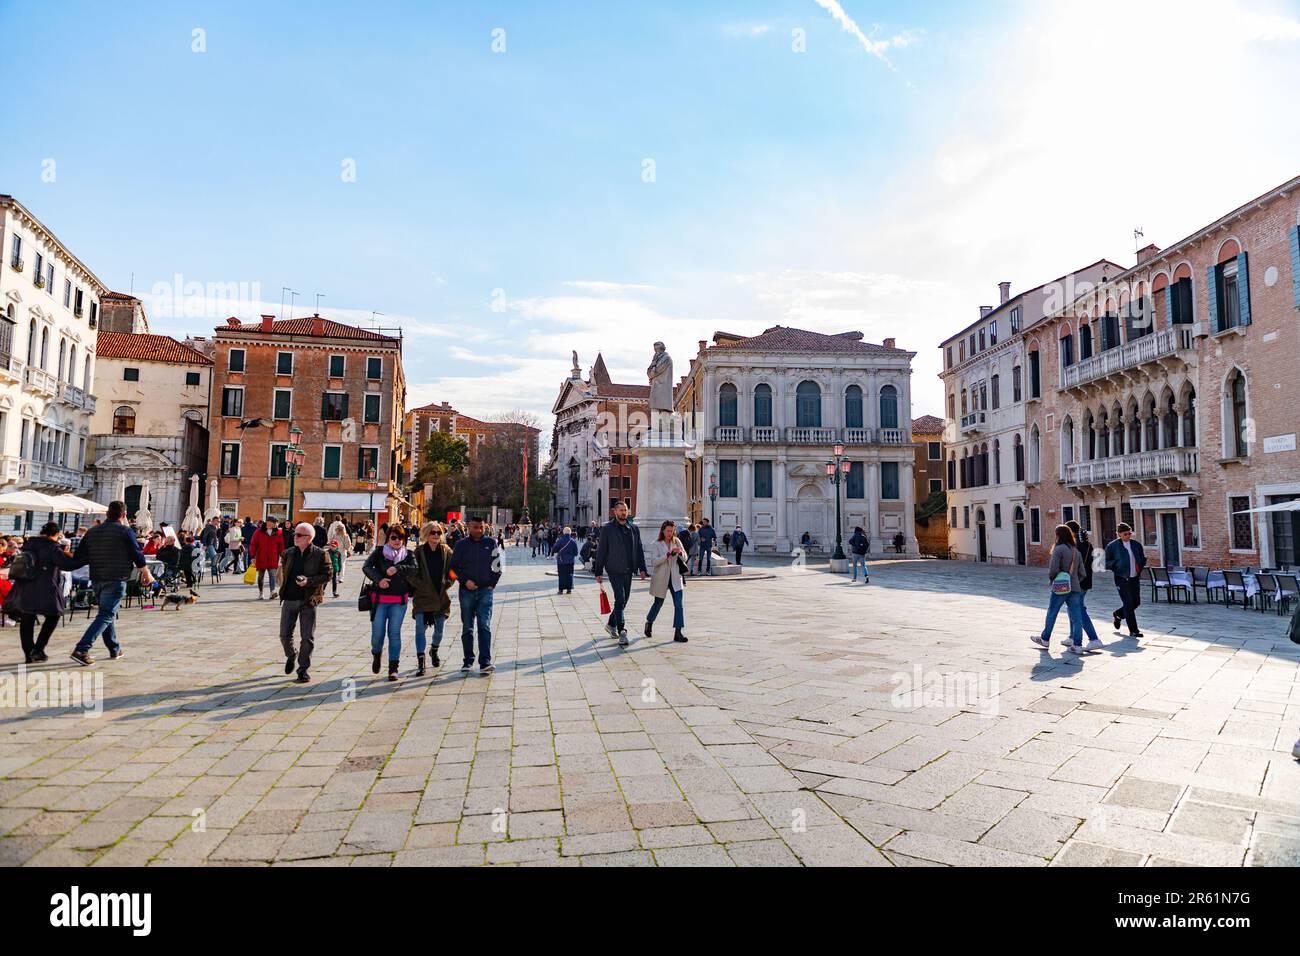 Venezia, Italia - 2 aprile 2022: Campo Santo Stefano è una piazza cittadina nei pressi del Ponte dell'Accademia, nel sestiere di San Marco, Venezia. Foto Stock